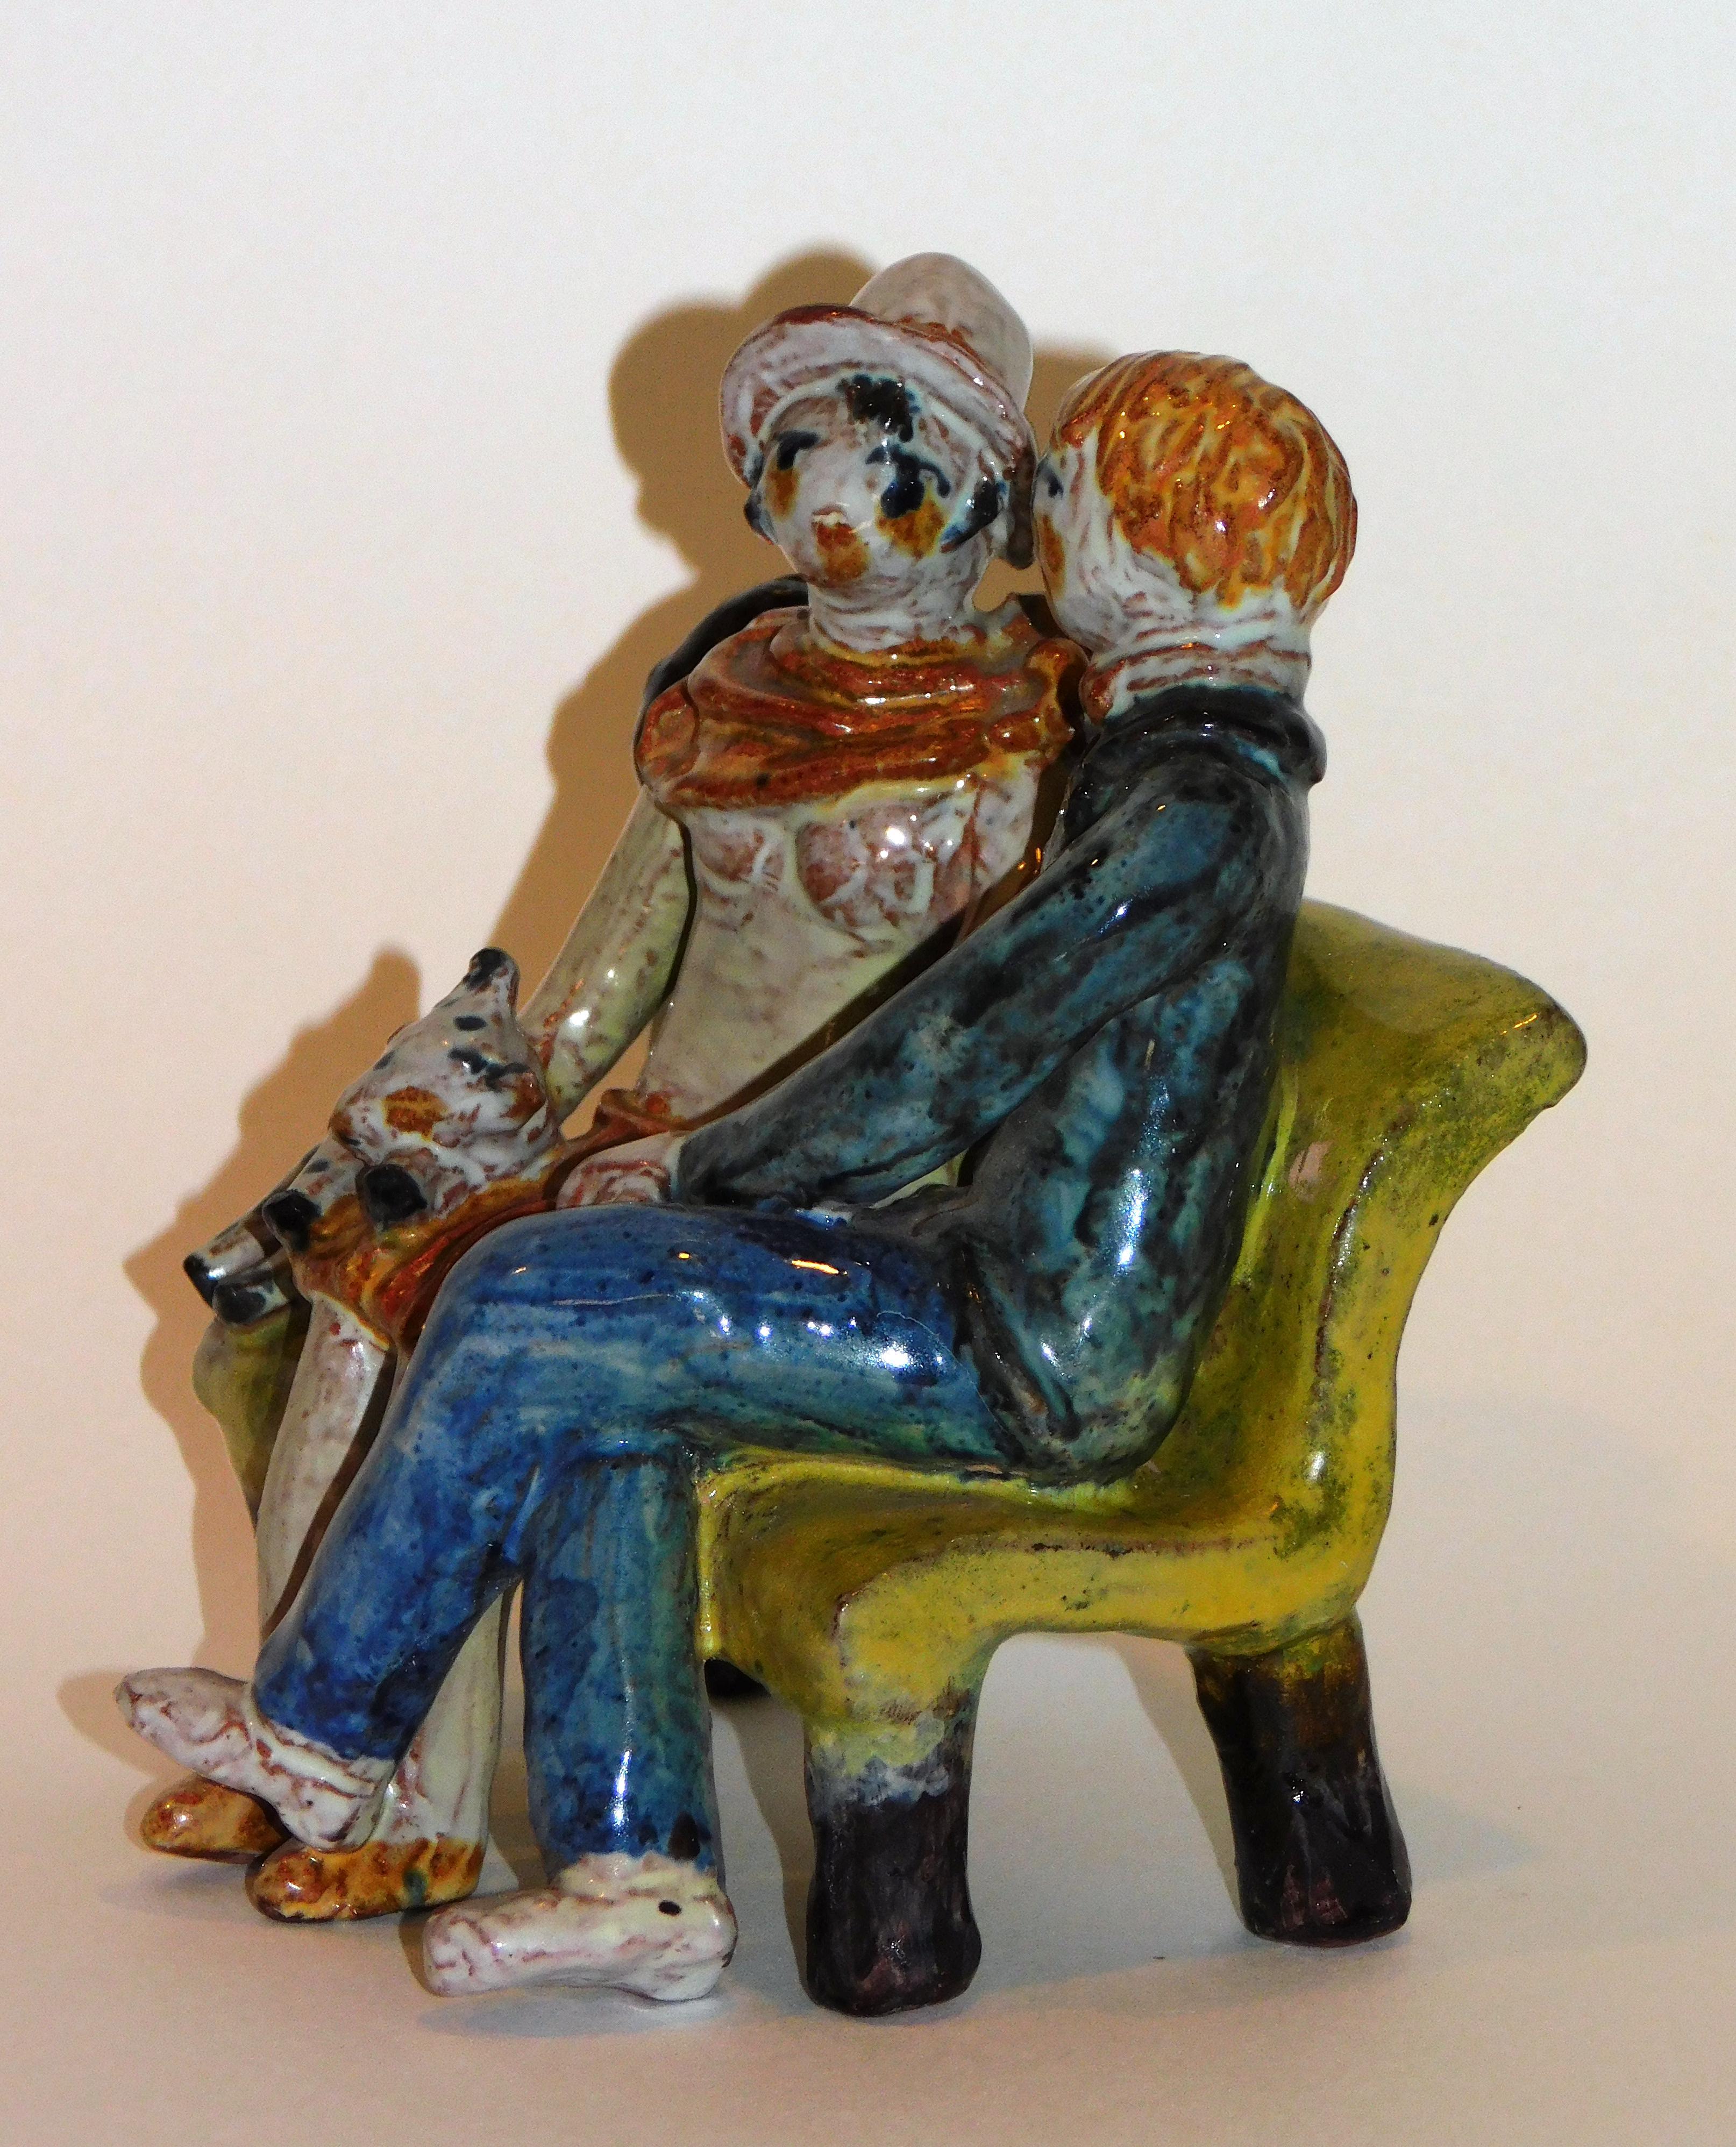 Excellente céramique conçue par l'artiste bien connue du Wiener Werkstatte, Kitty Rix. Elle représente un jeune couple se tenant par la main sur un banc public.
Exécuté par le Wiener Werkstatte. La figurine mesure 5 1/2